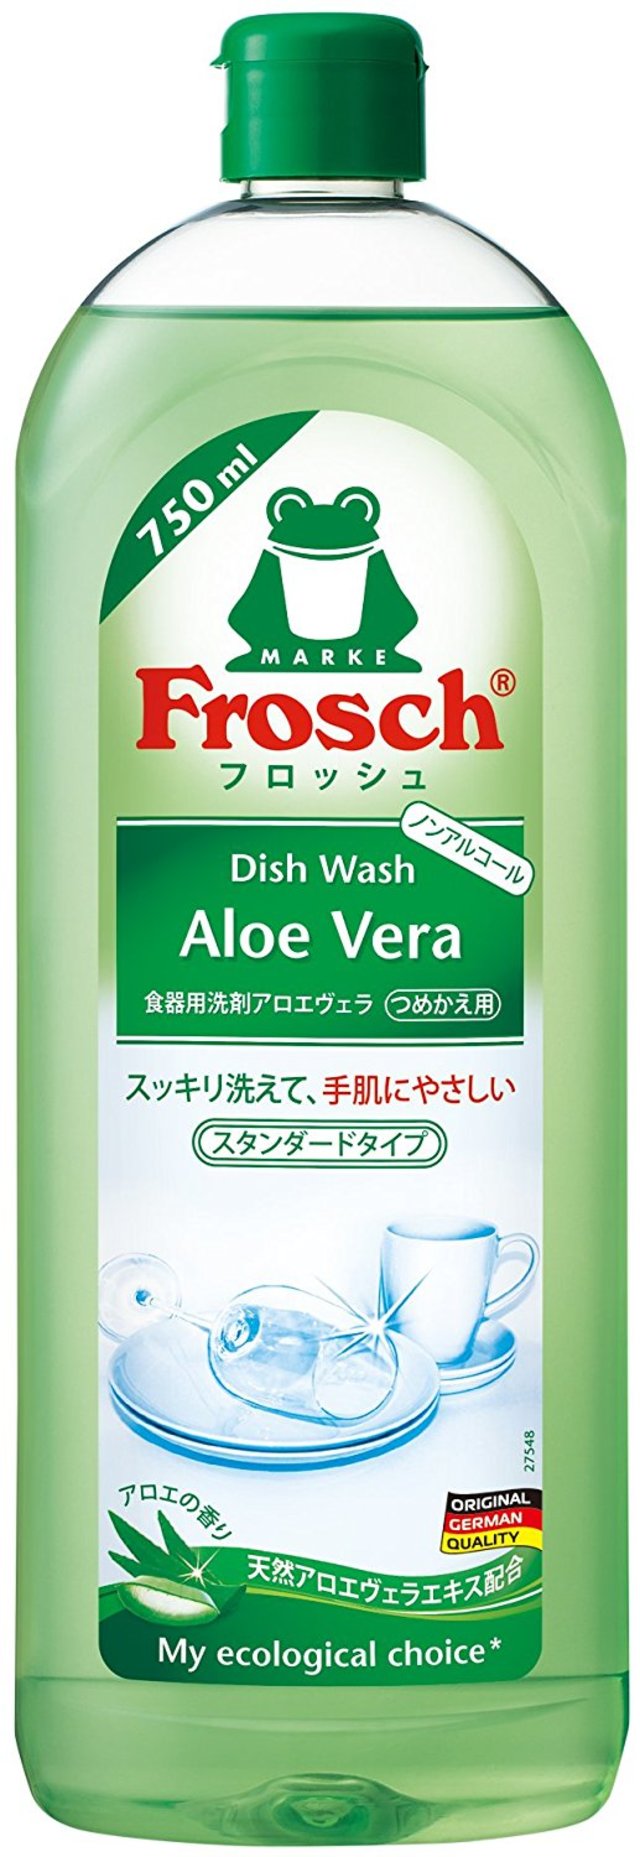 フロッシュ 食器用洗剤 アロエヴェラ 750ml